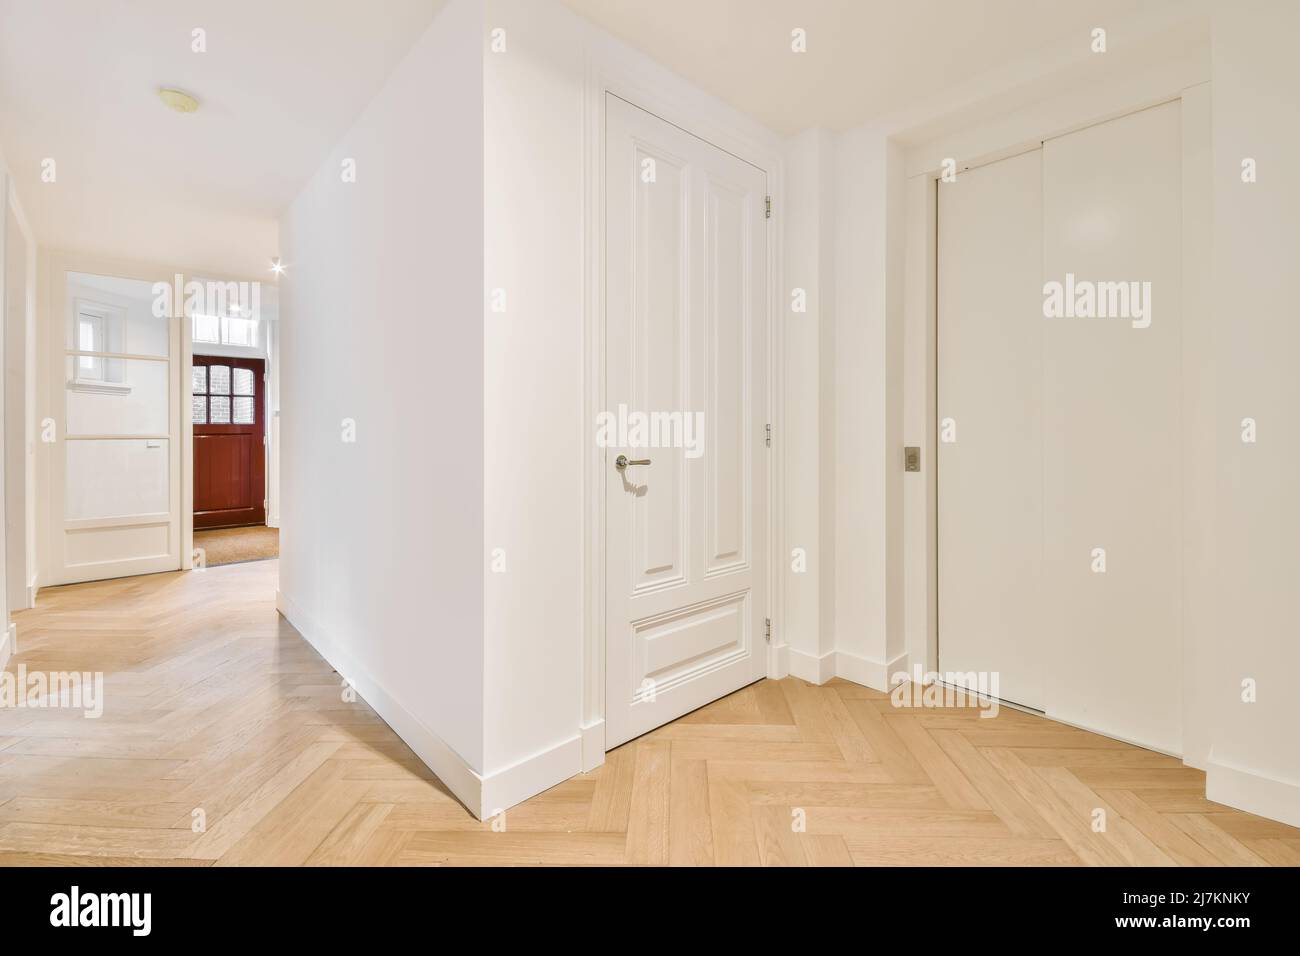 Couloir d'appartement élégant et lumineux avec murs blancs et porte vitrée d'entrée près des chambres avec miroir et chaise à la maison Banque D'Images